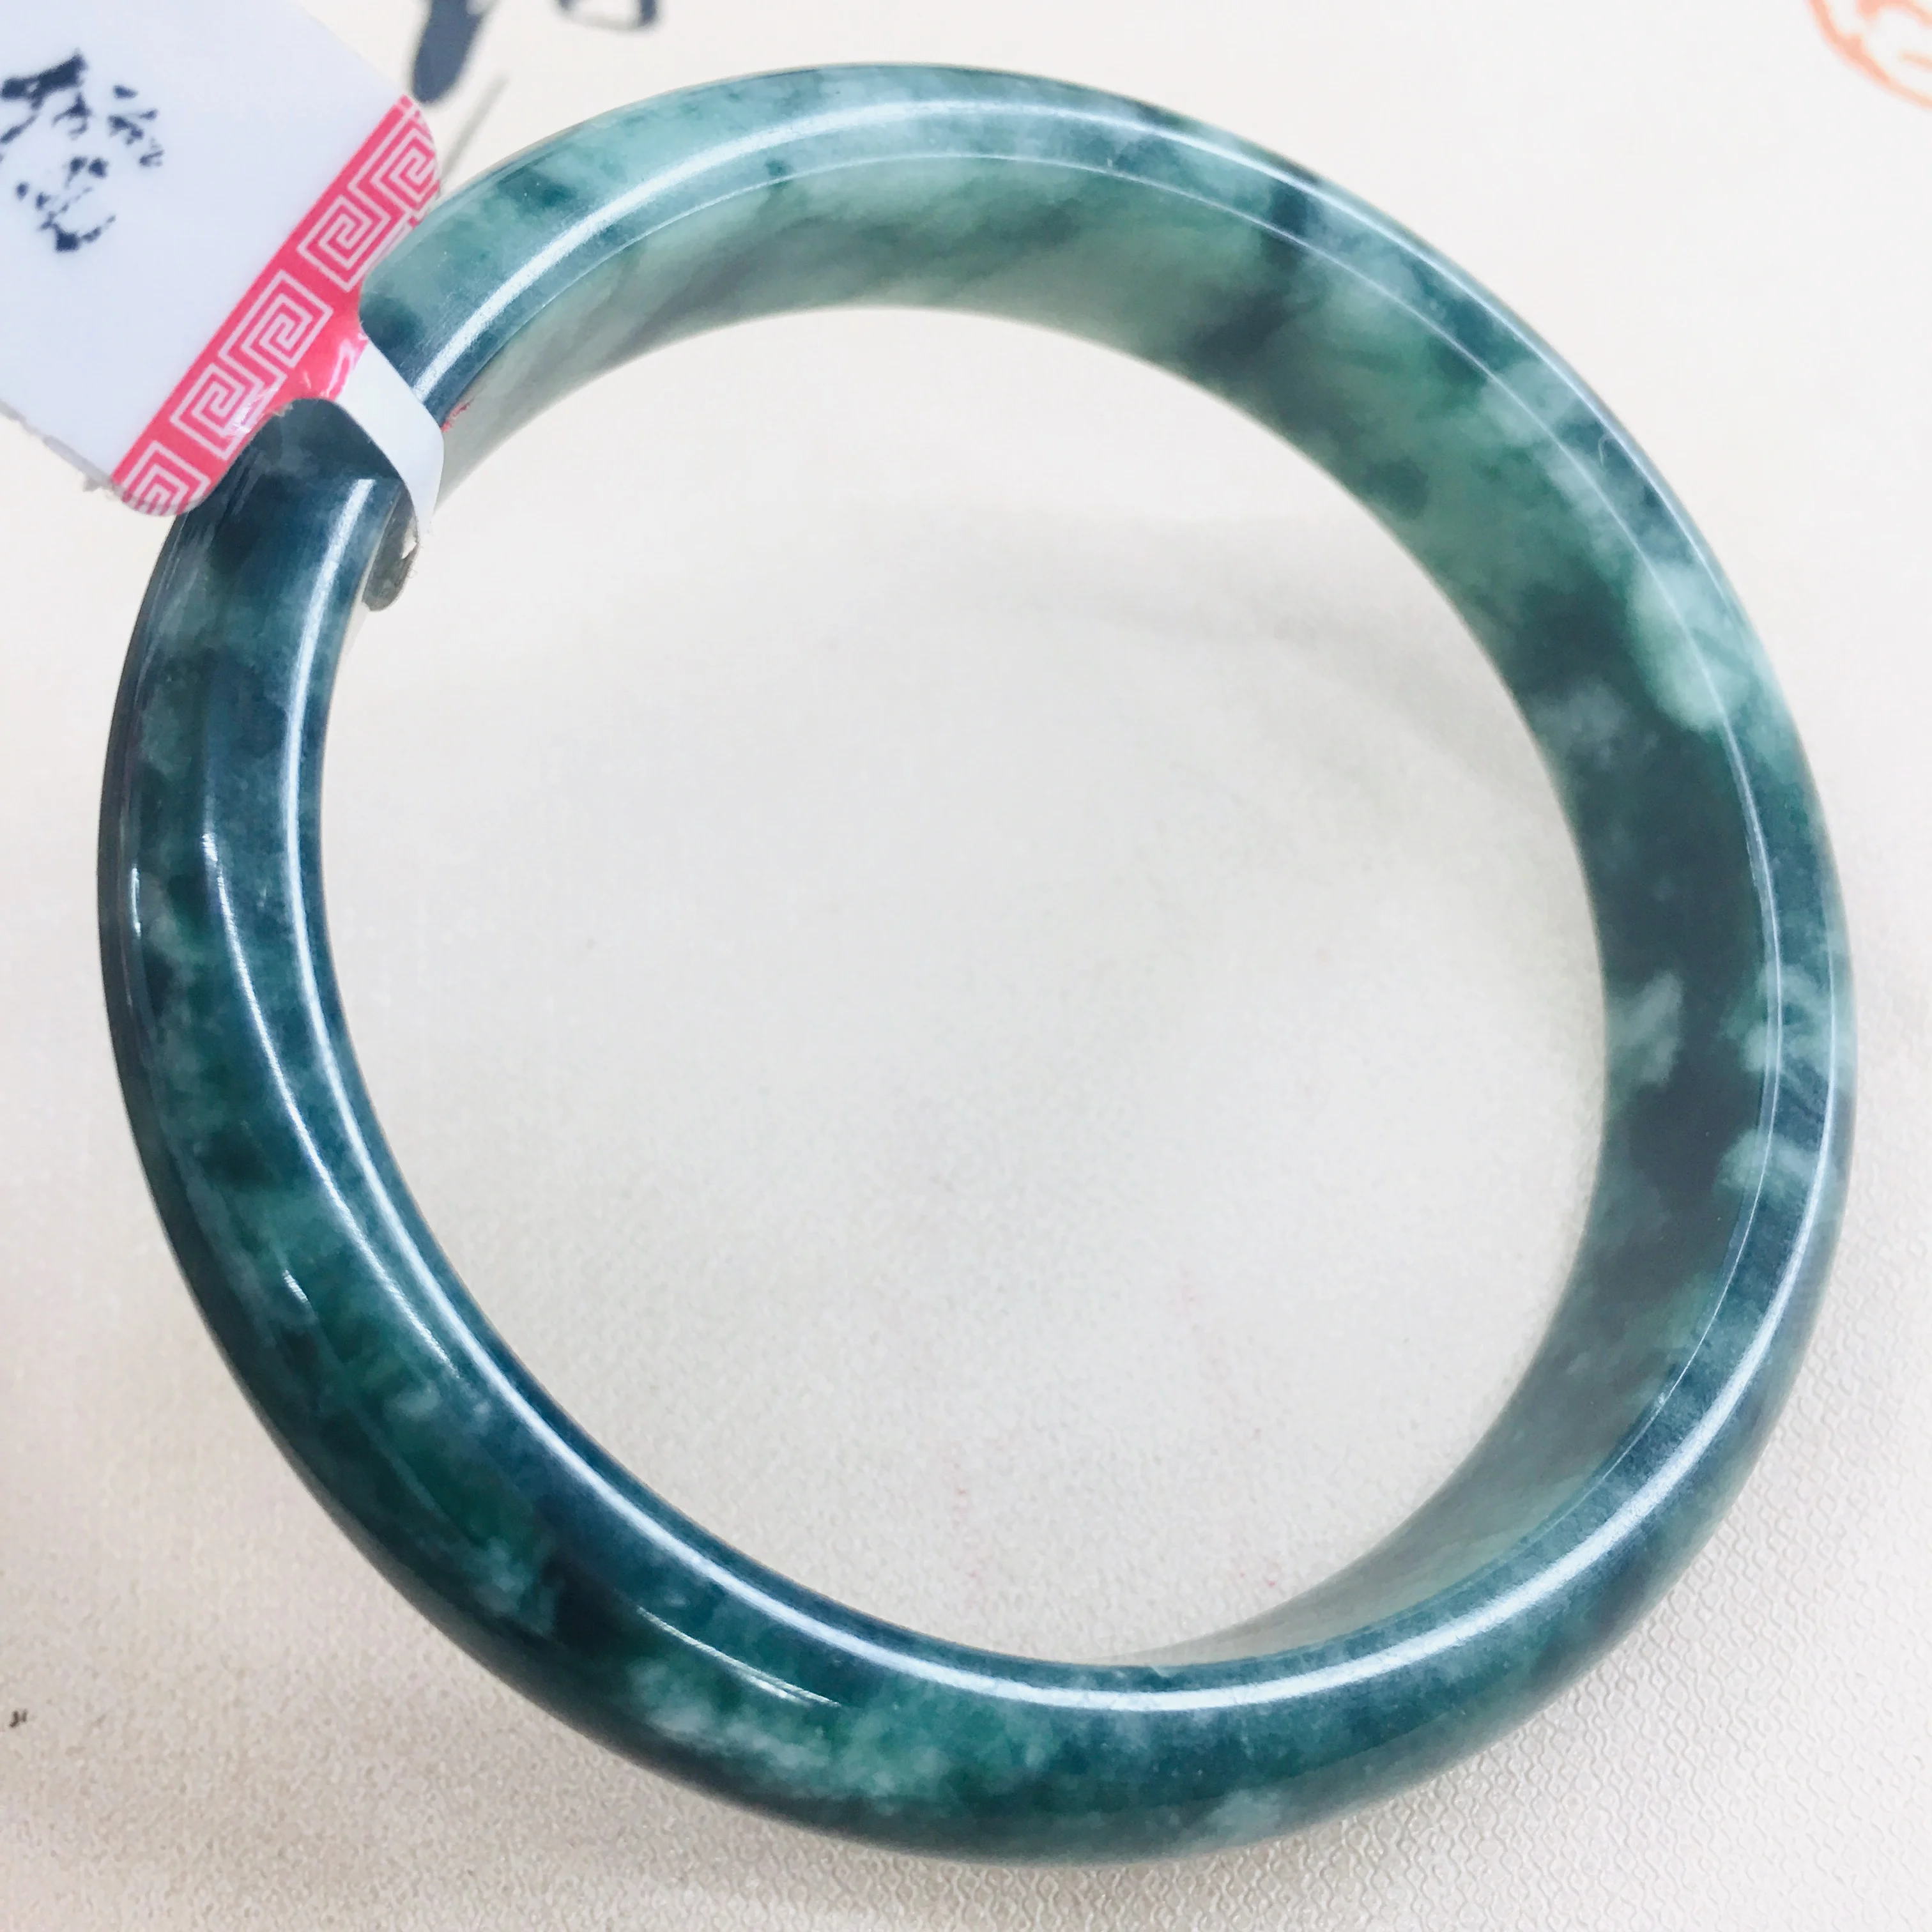 Zheru ювелирные изделия чистый натуральный жадеитовый браслет натуральный благородный темно-зеленый 54-62 мм двухцветный женский нефритовый